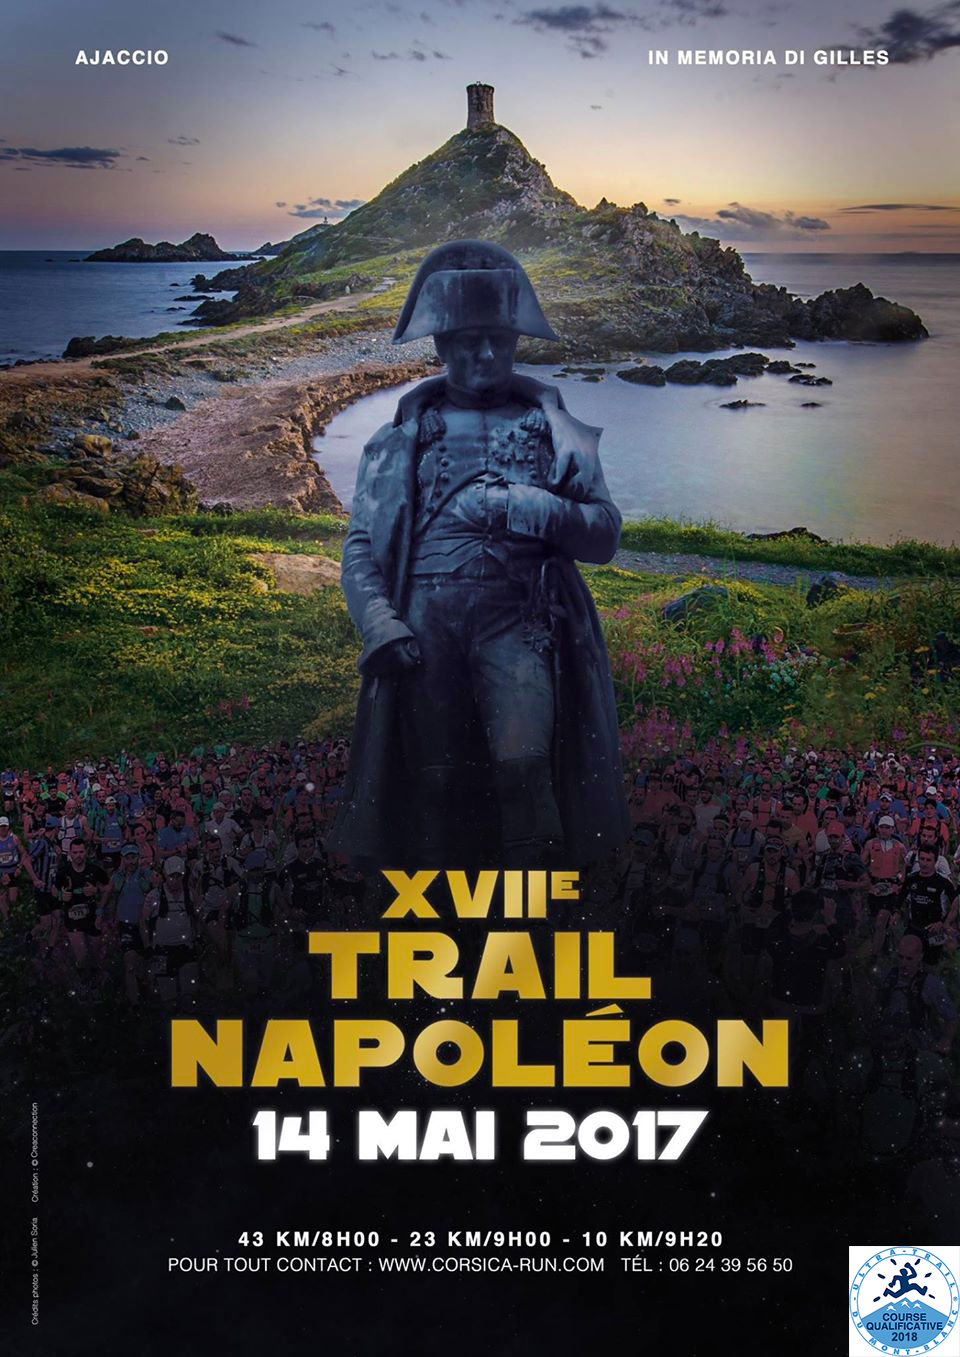 Points ITRA: L'Imperial Trail et le Trail Napoléon Classique homologués